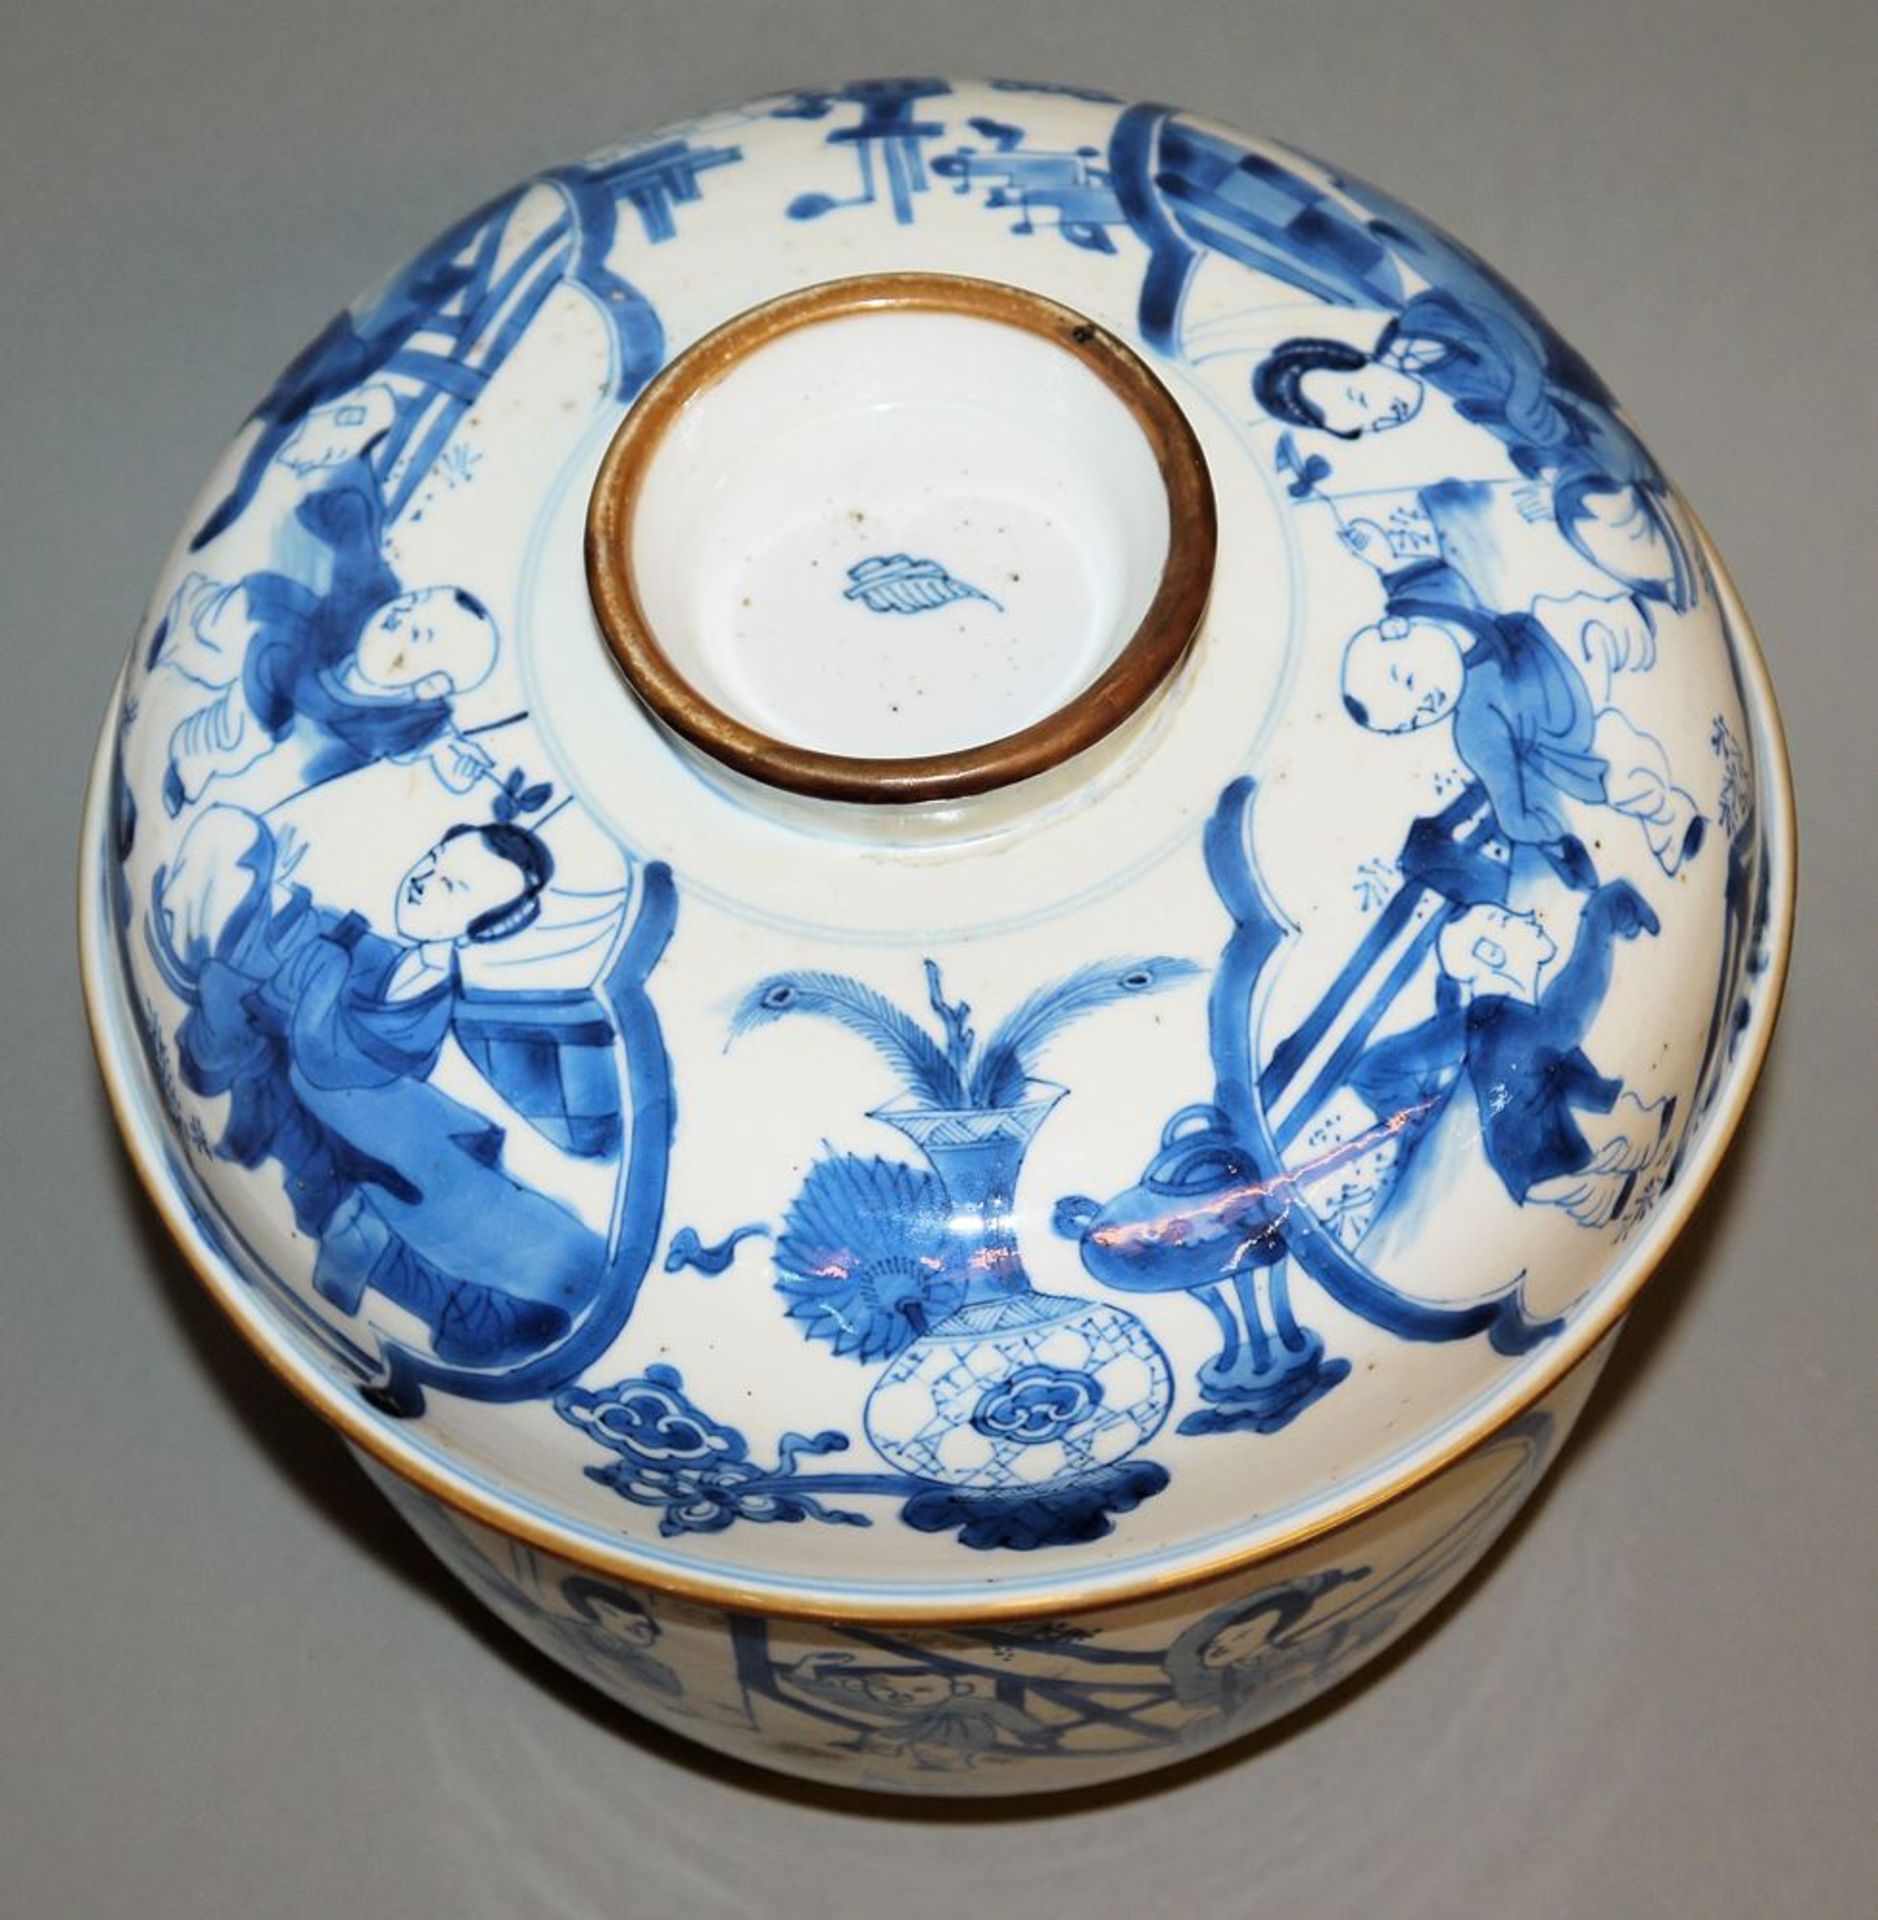 Großer Blauweiß-Speisetopf mit Deckel, Kangxi- oder Guangxu-Zeit, China um 1700 oder 1900 - Bild 4 aus 6